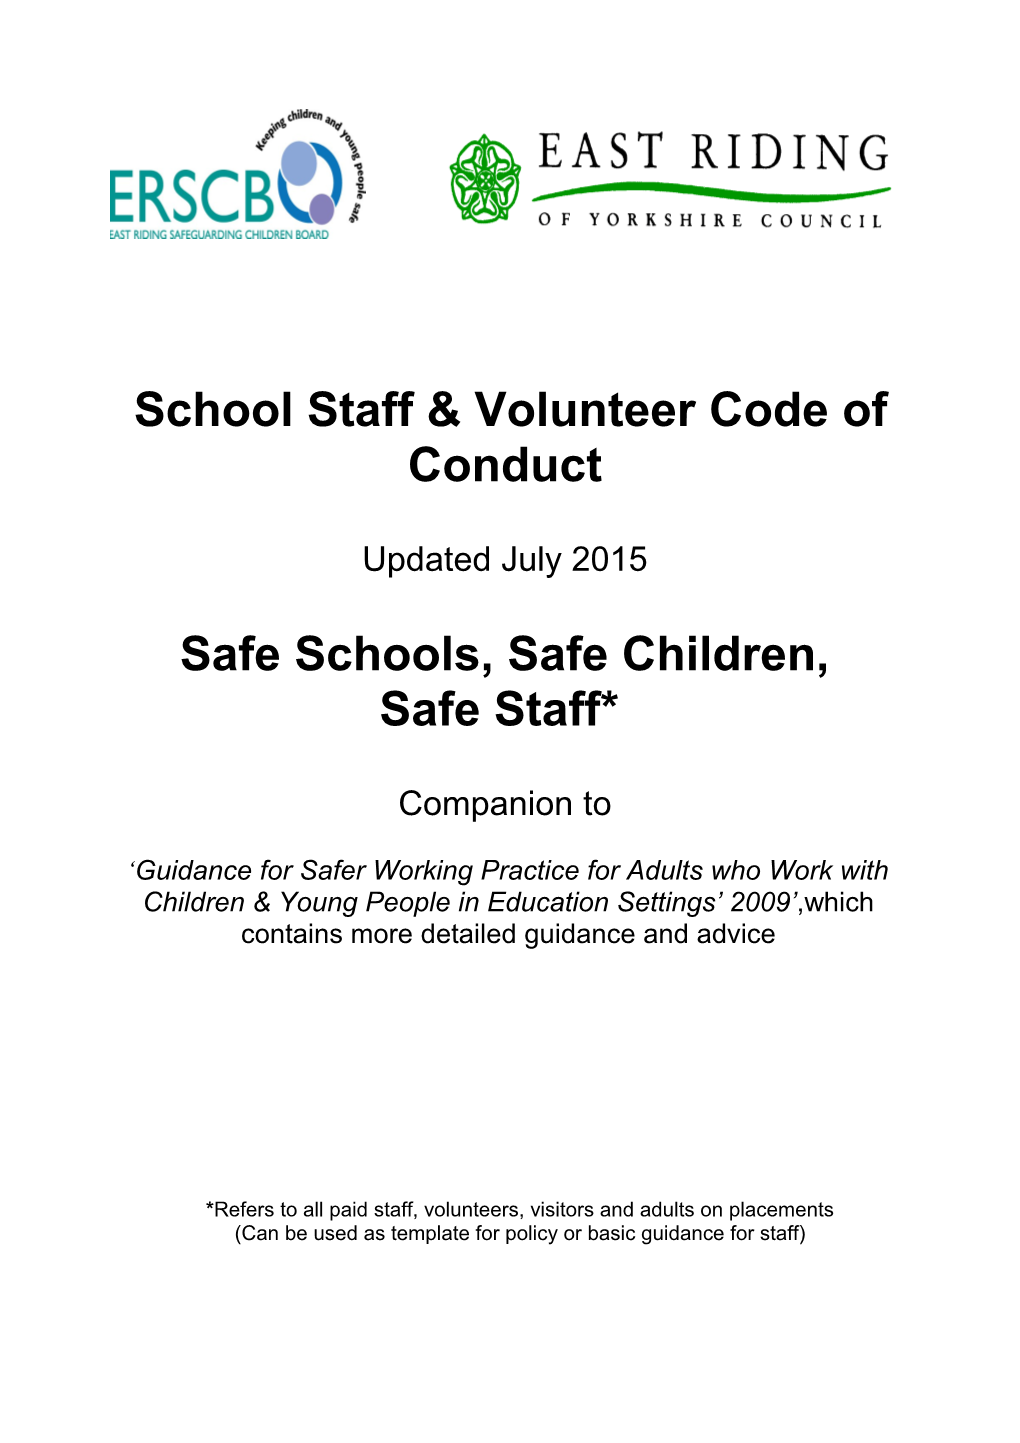 Safe Schools - Safe Children - Safe Staff*